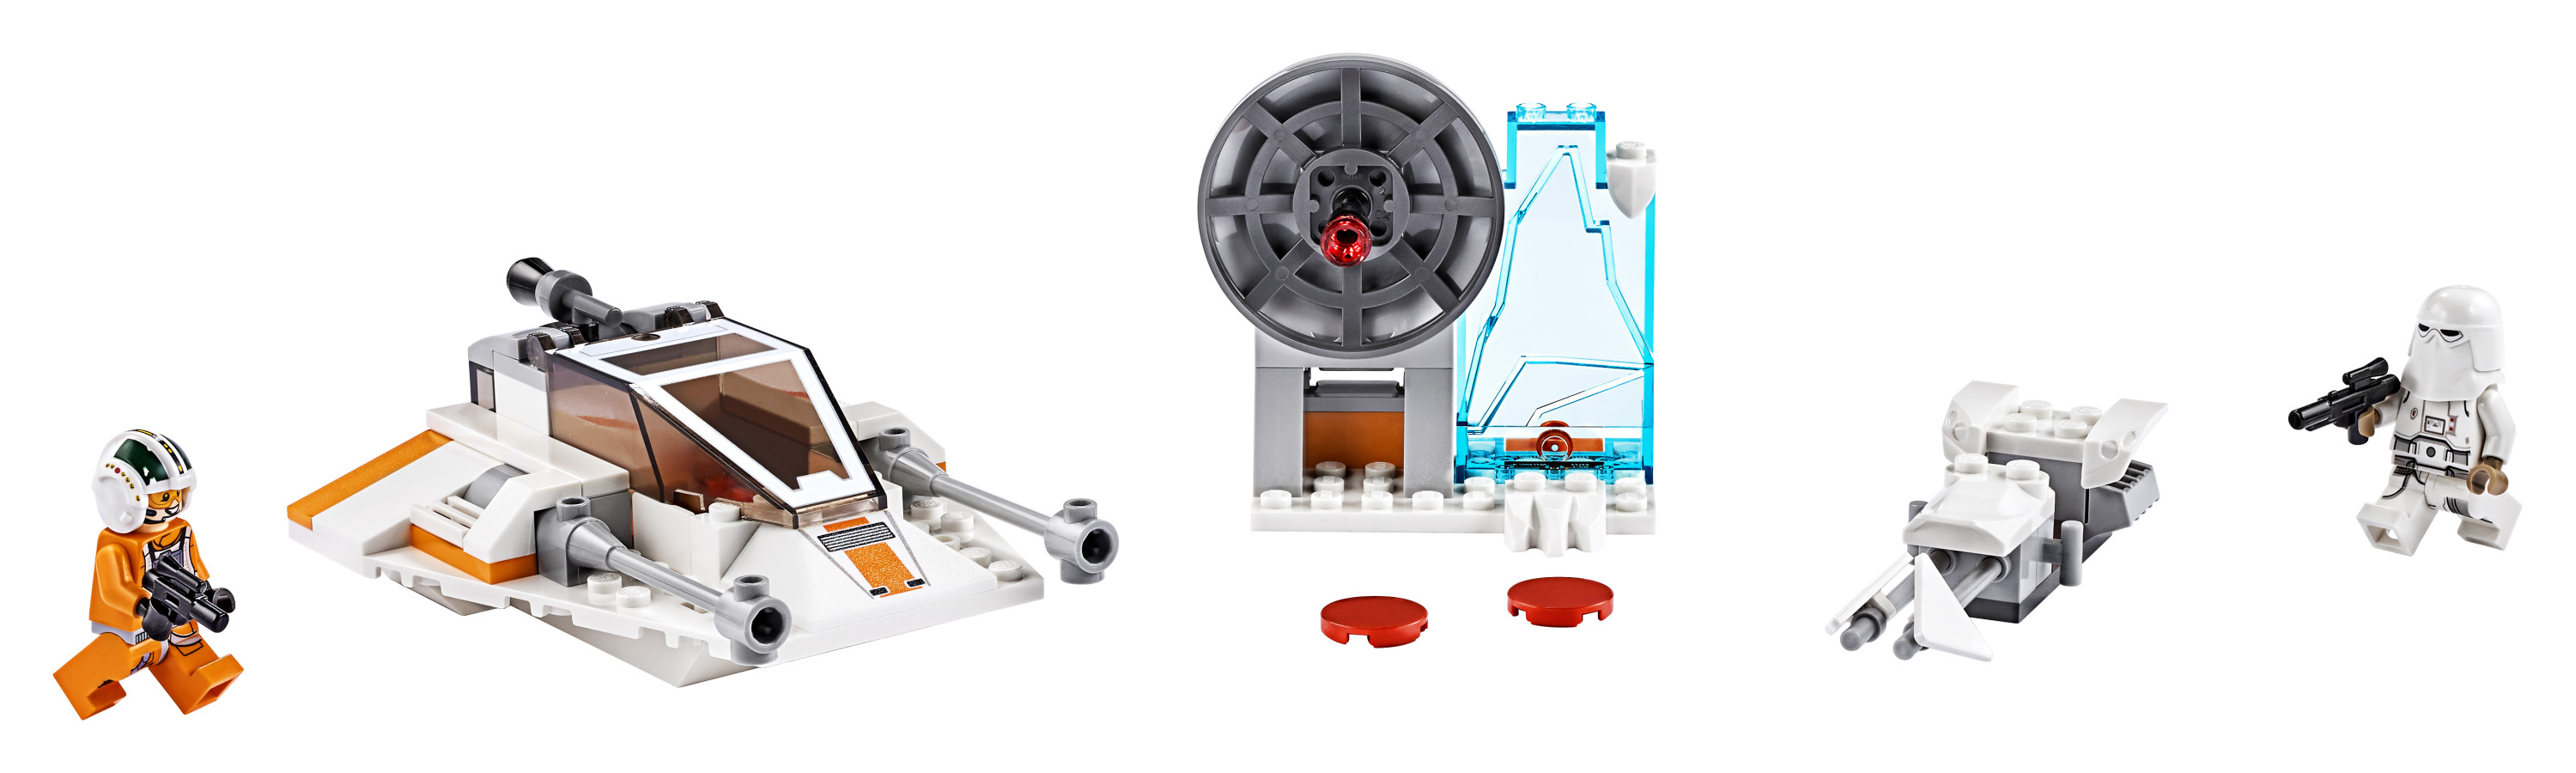 LEGO Star Wars Snowspeeder 75268 Starship Creative Building Toy for Preschool Children 4+ (91 pieces) - image 3 of 7